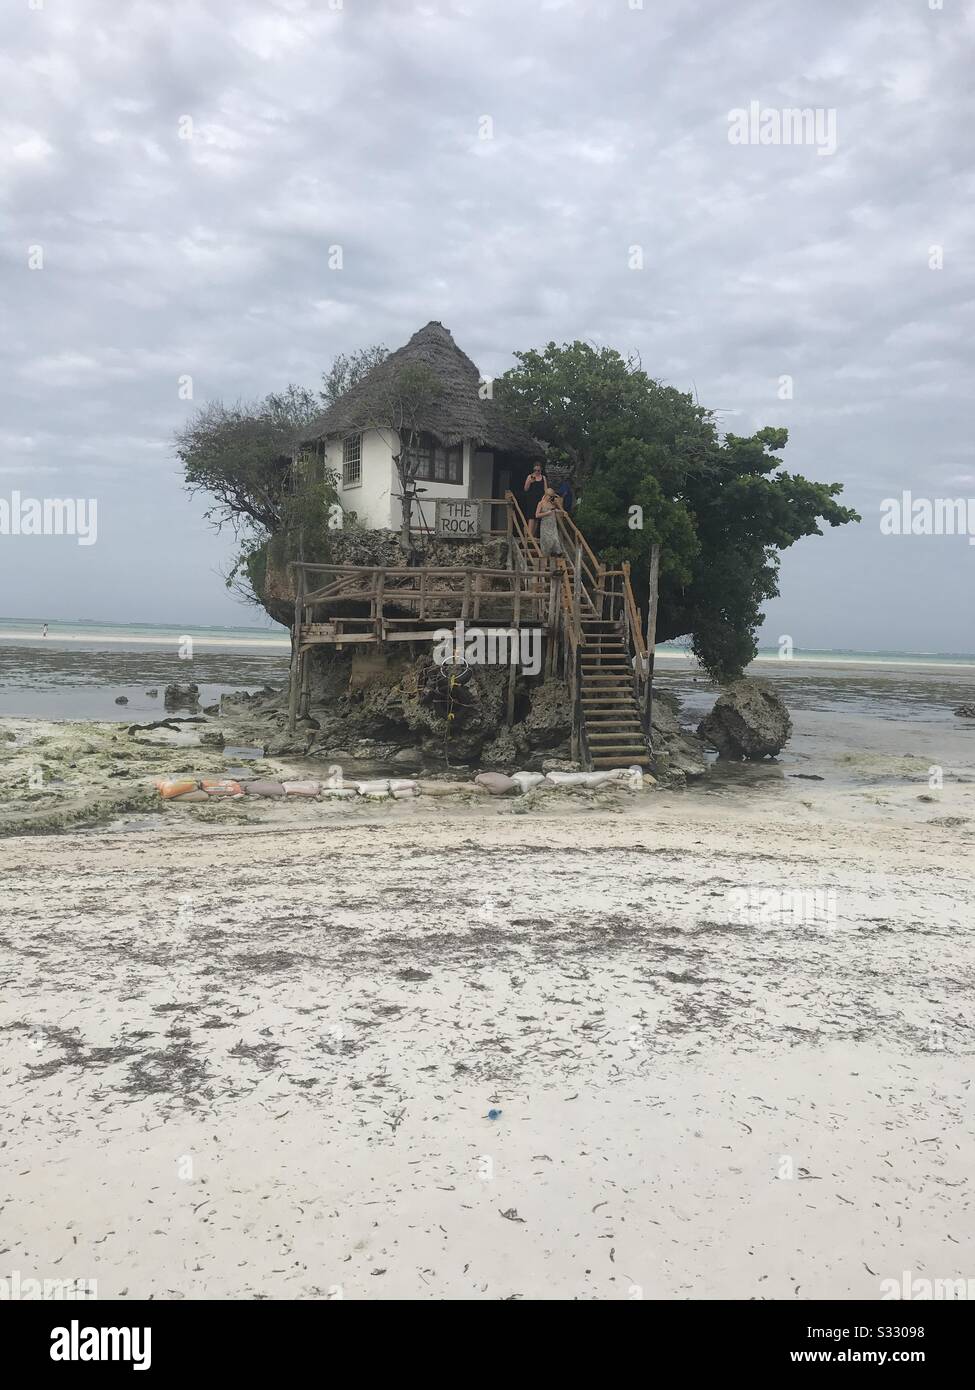 The Rock: Une petite île à l'est de l'île de Zanzibar, les gens peuvent y aller à pied à marée basse, contient un restaurant et quelques arbres. Banque D'Images